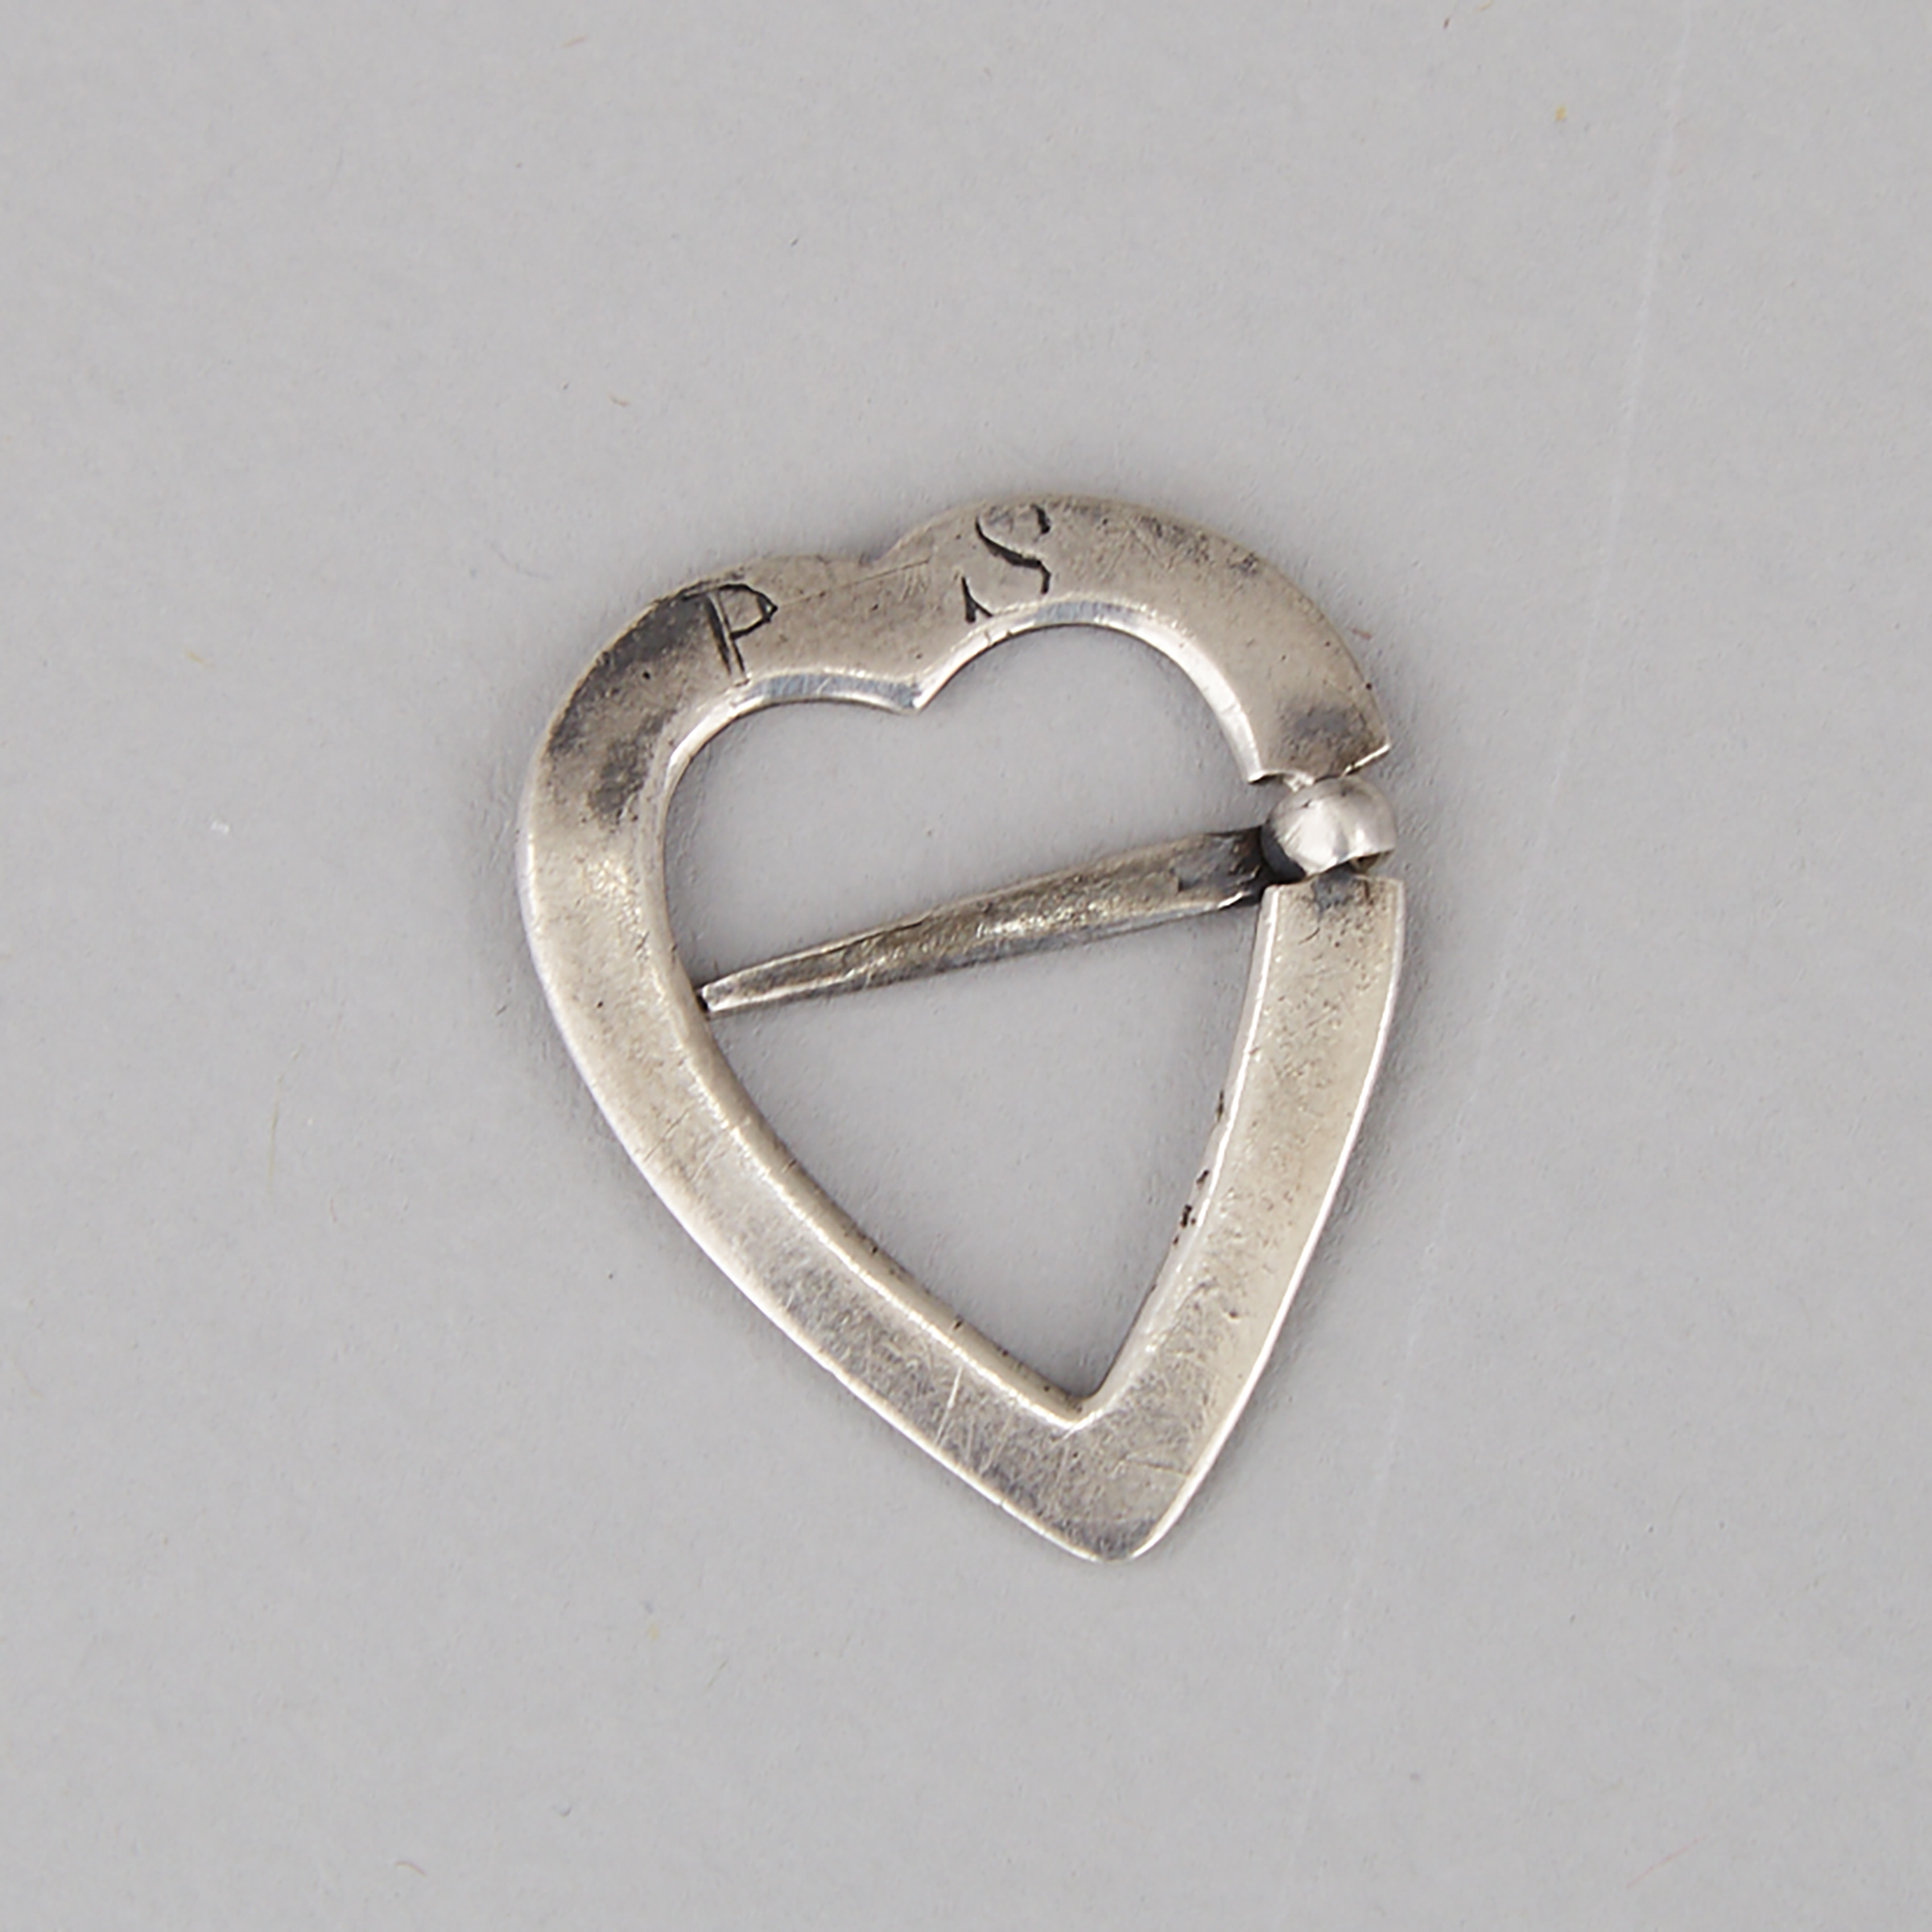 Canadian Trade Silver Heart Brooch, c.1800